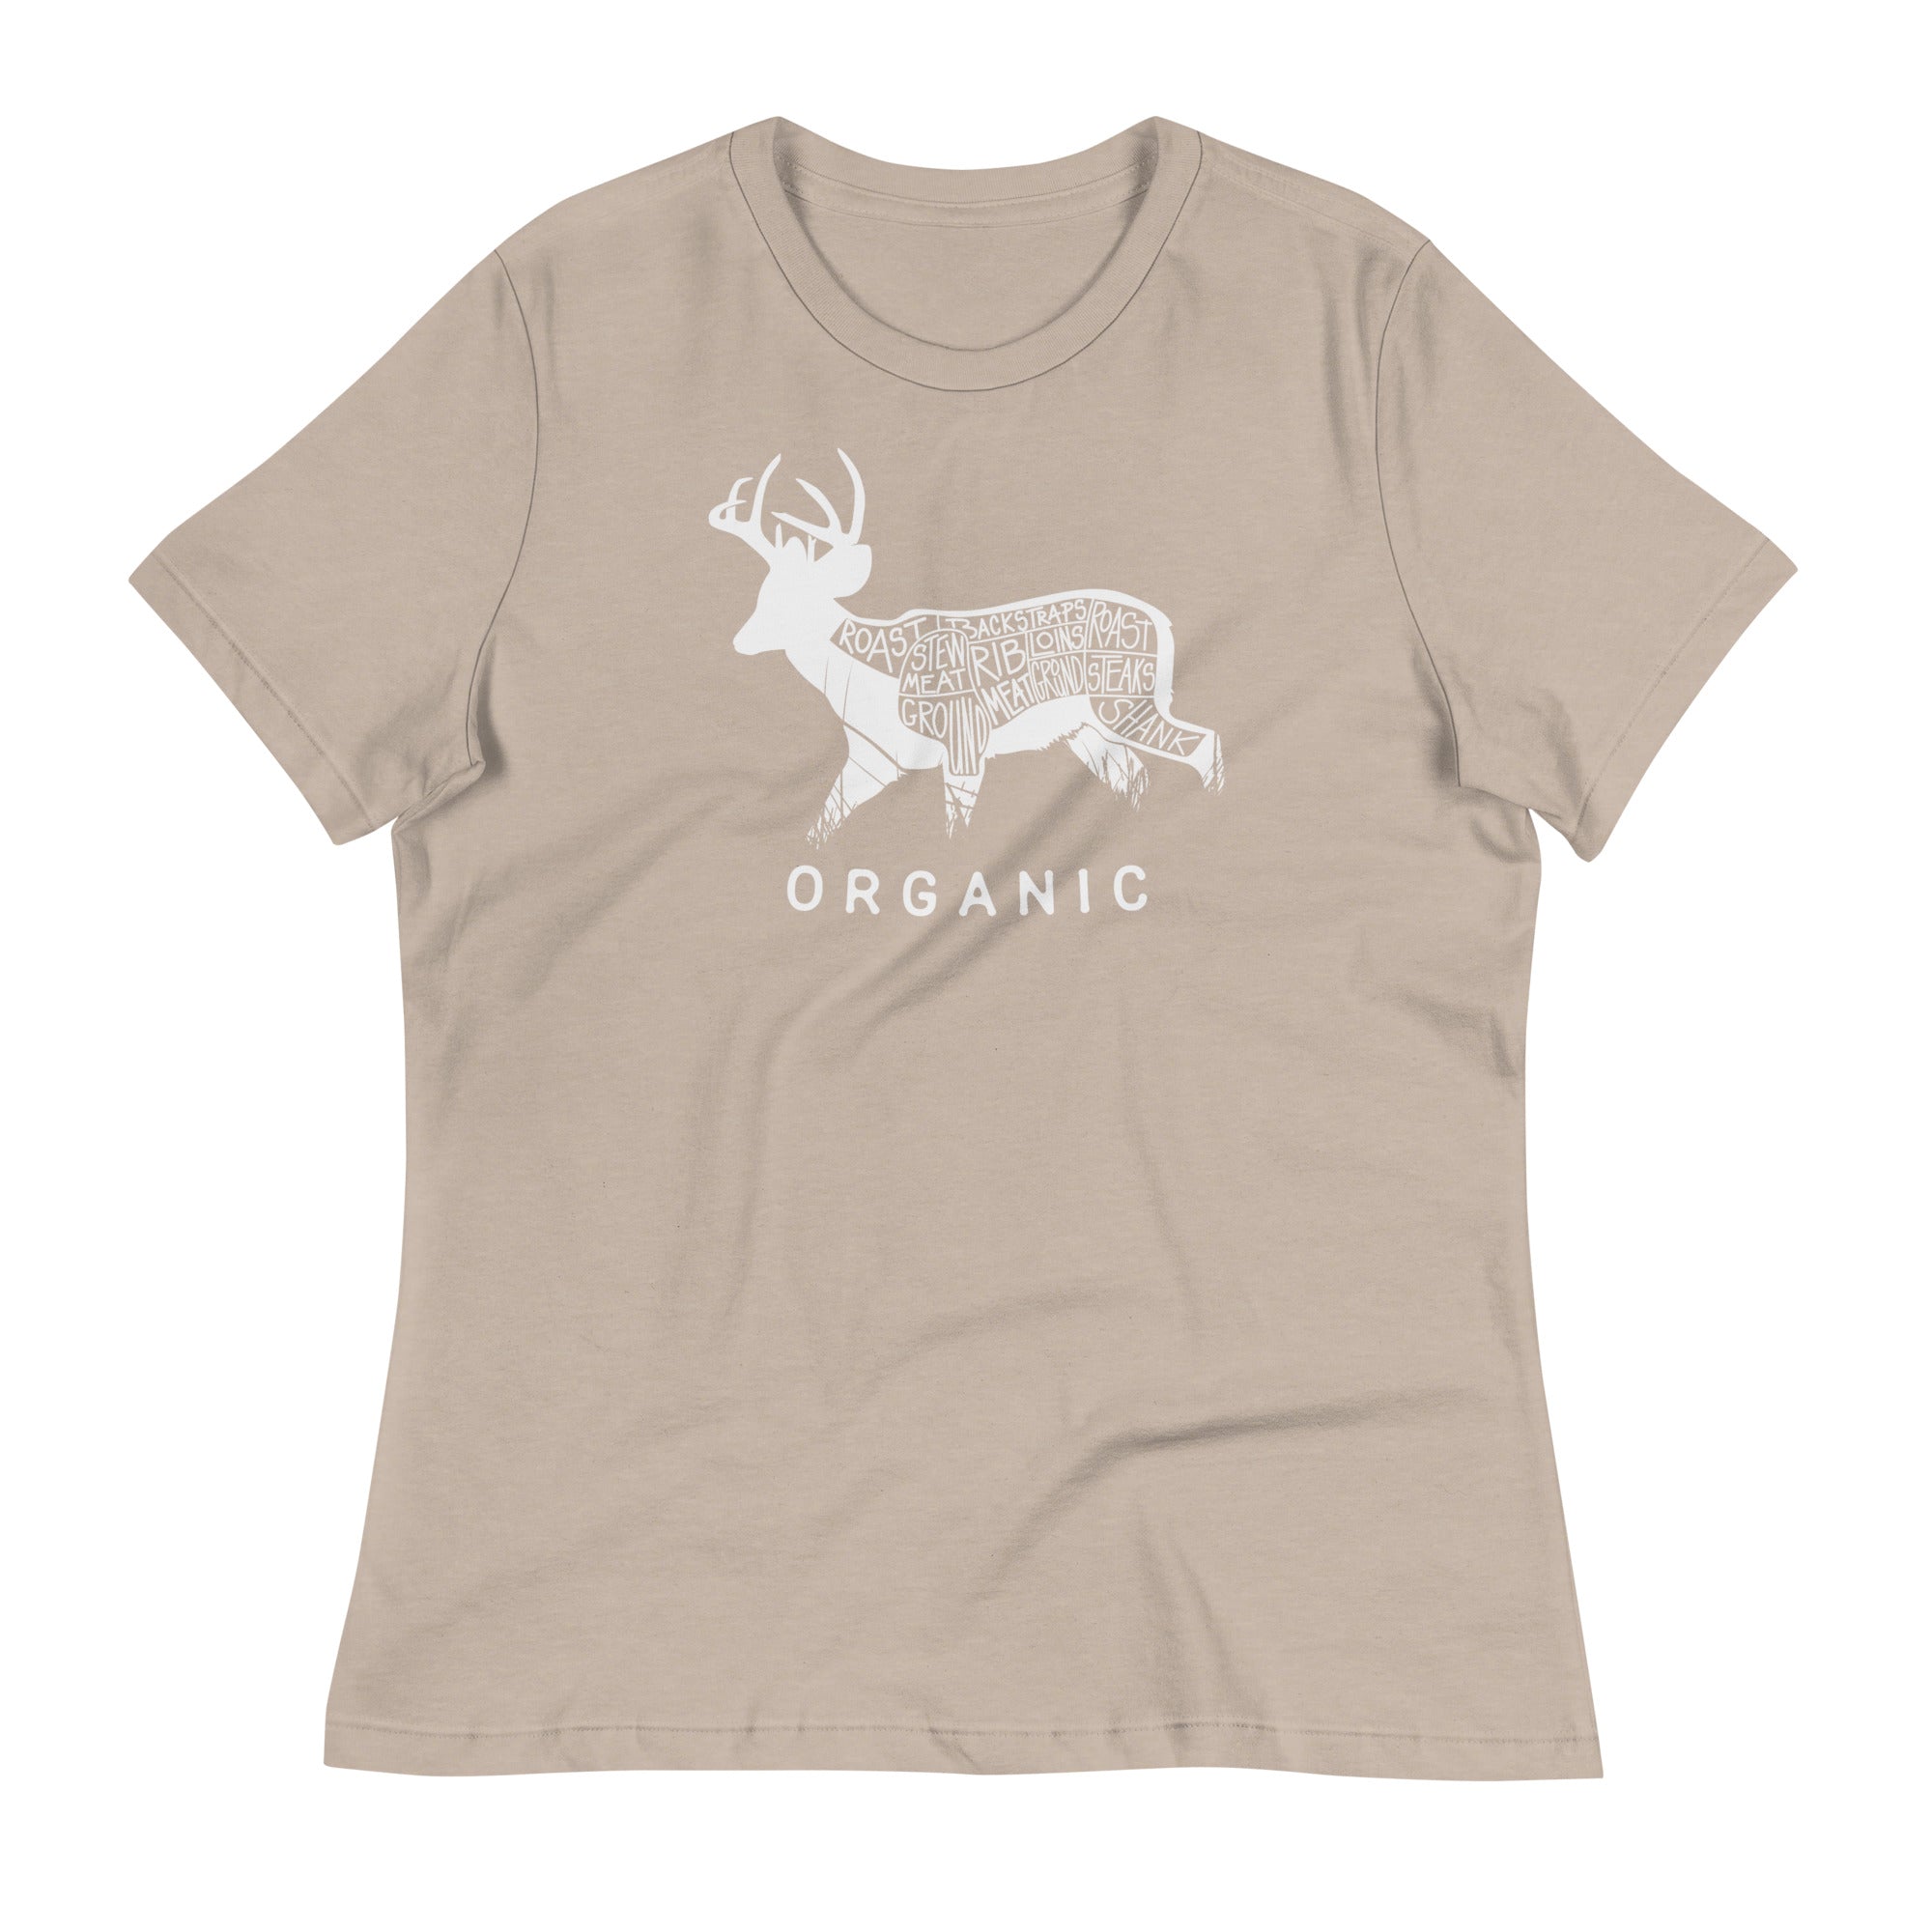 Women's Organic Coues Deer T-Shirt